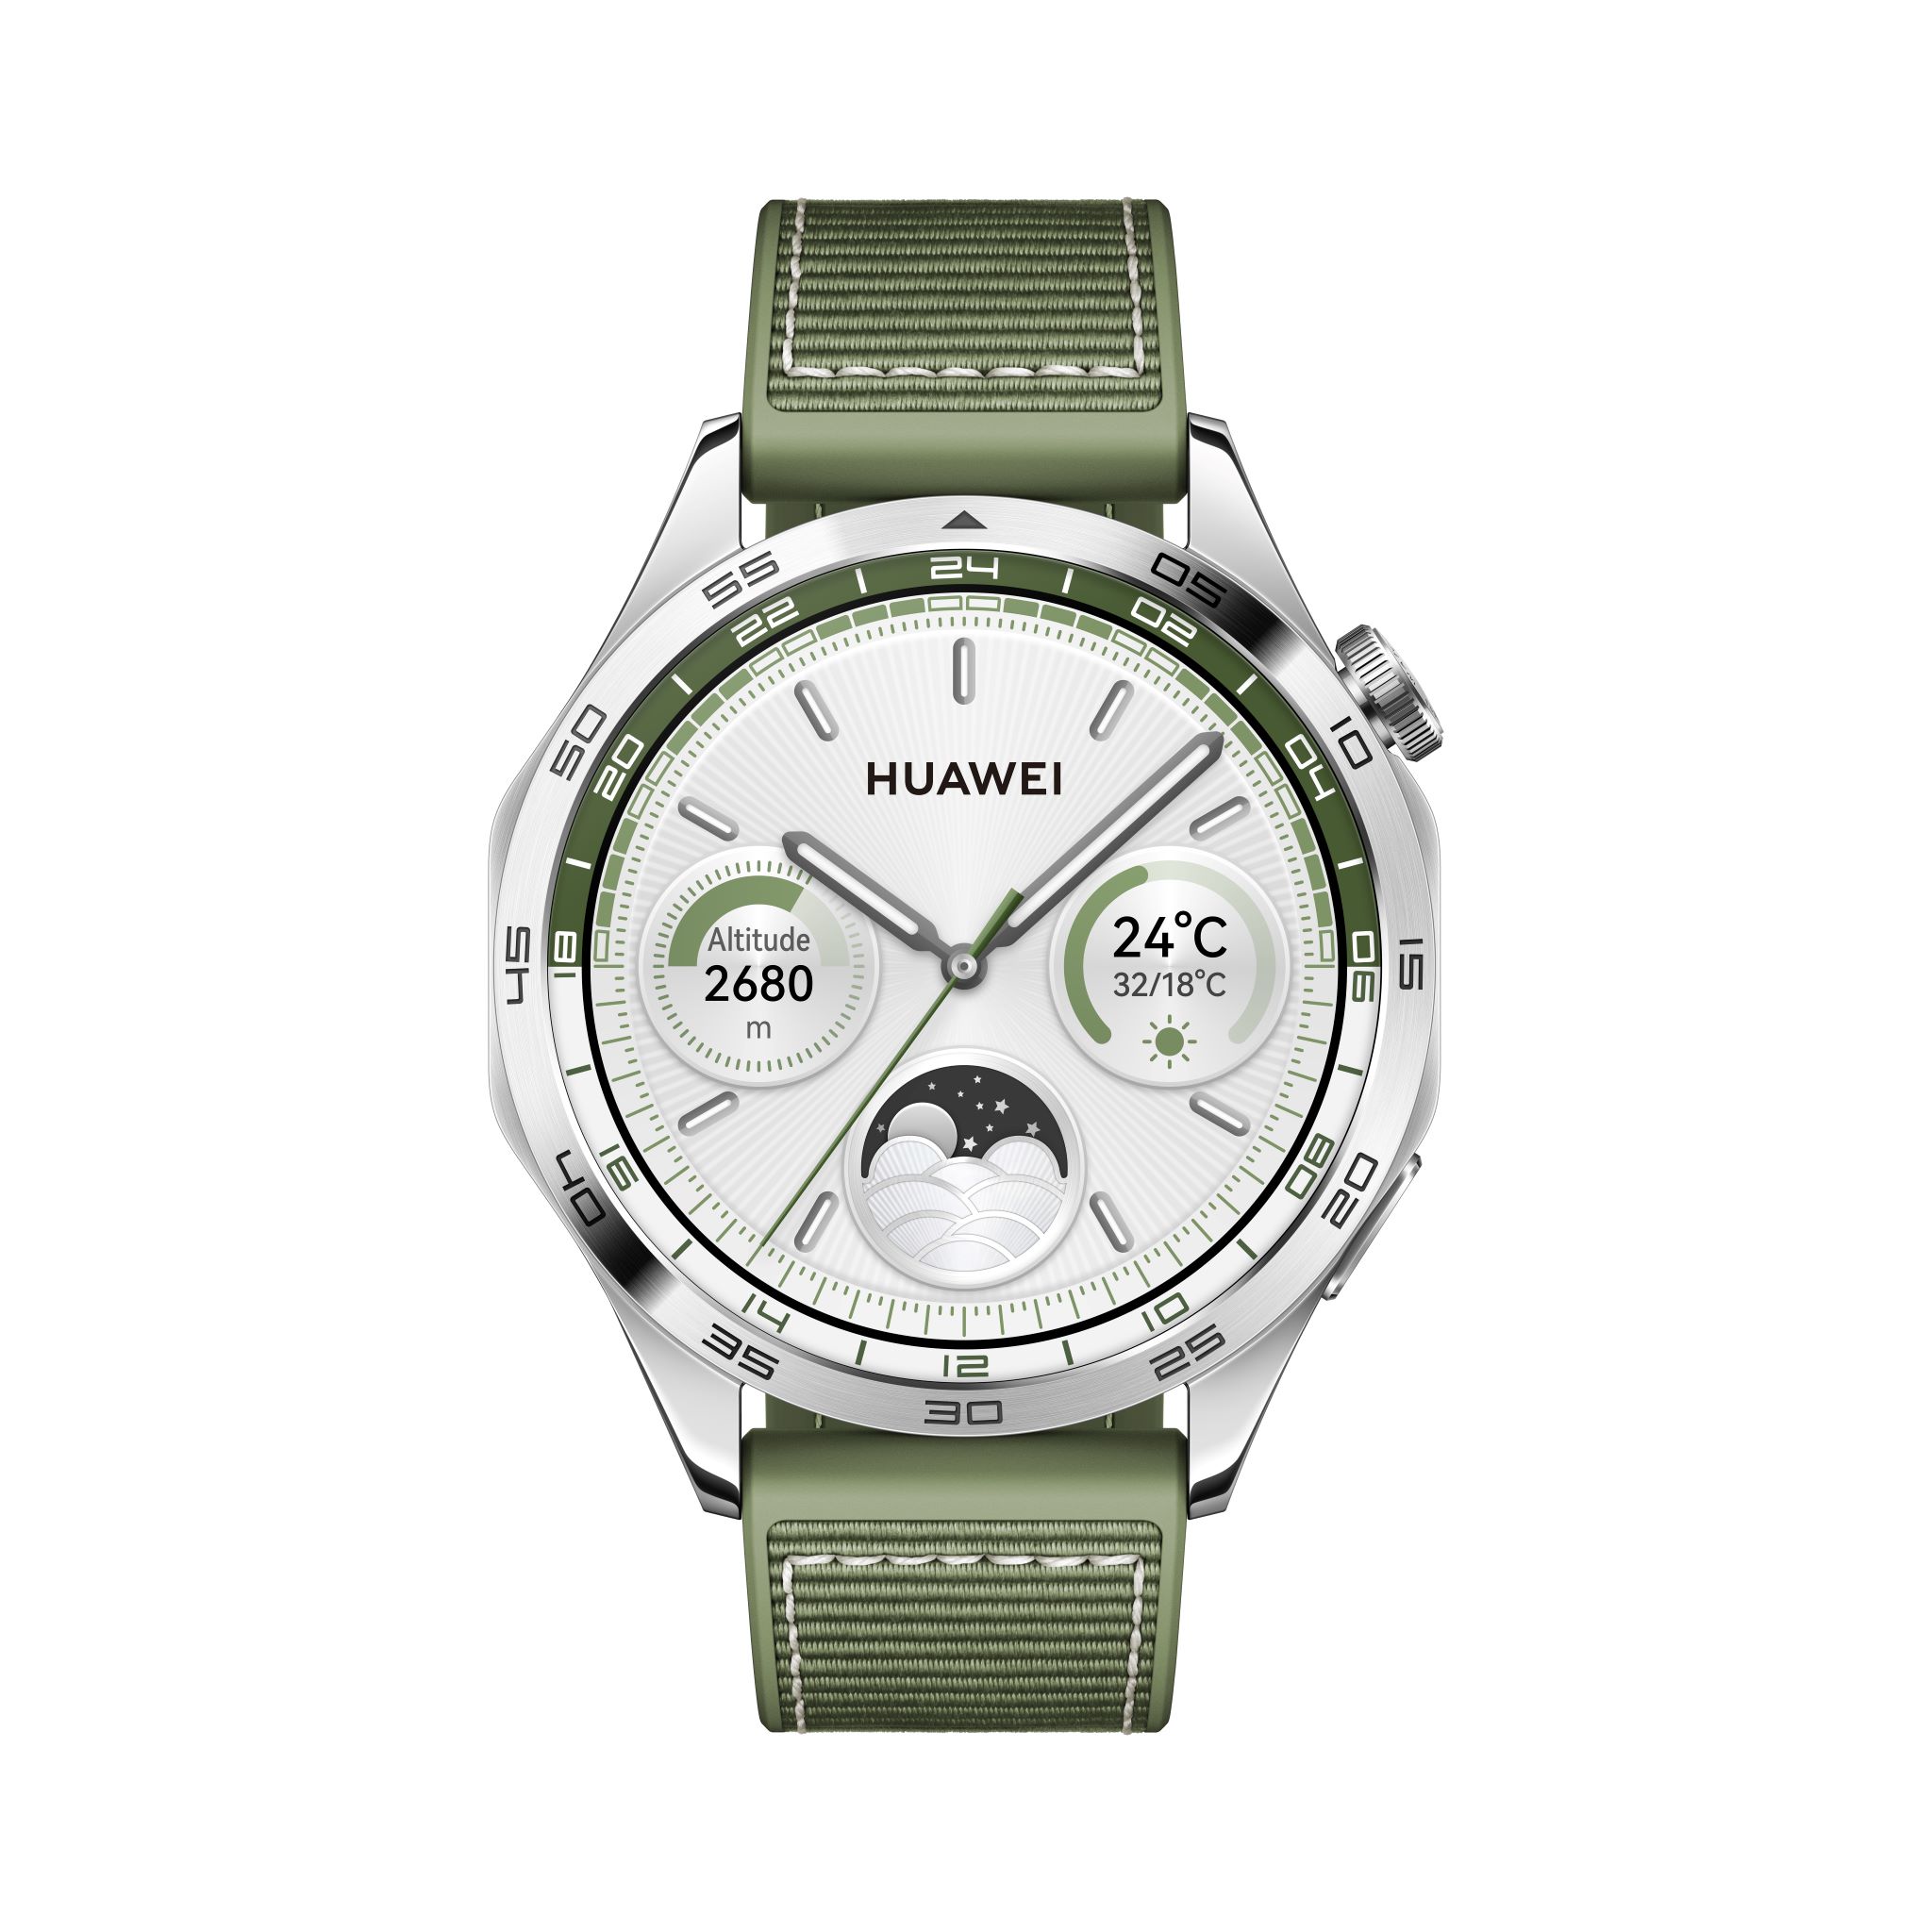 Huawei Watch GT (Phoinix) Cyberport ++ silber/grün Smartwatch 46mm 4 AMOLED-Display